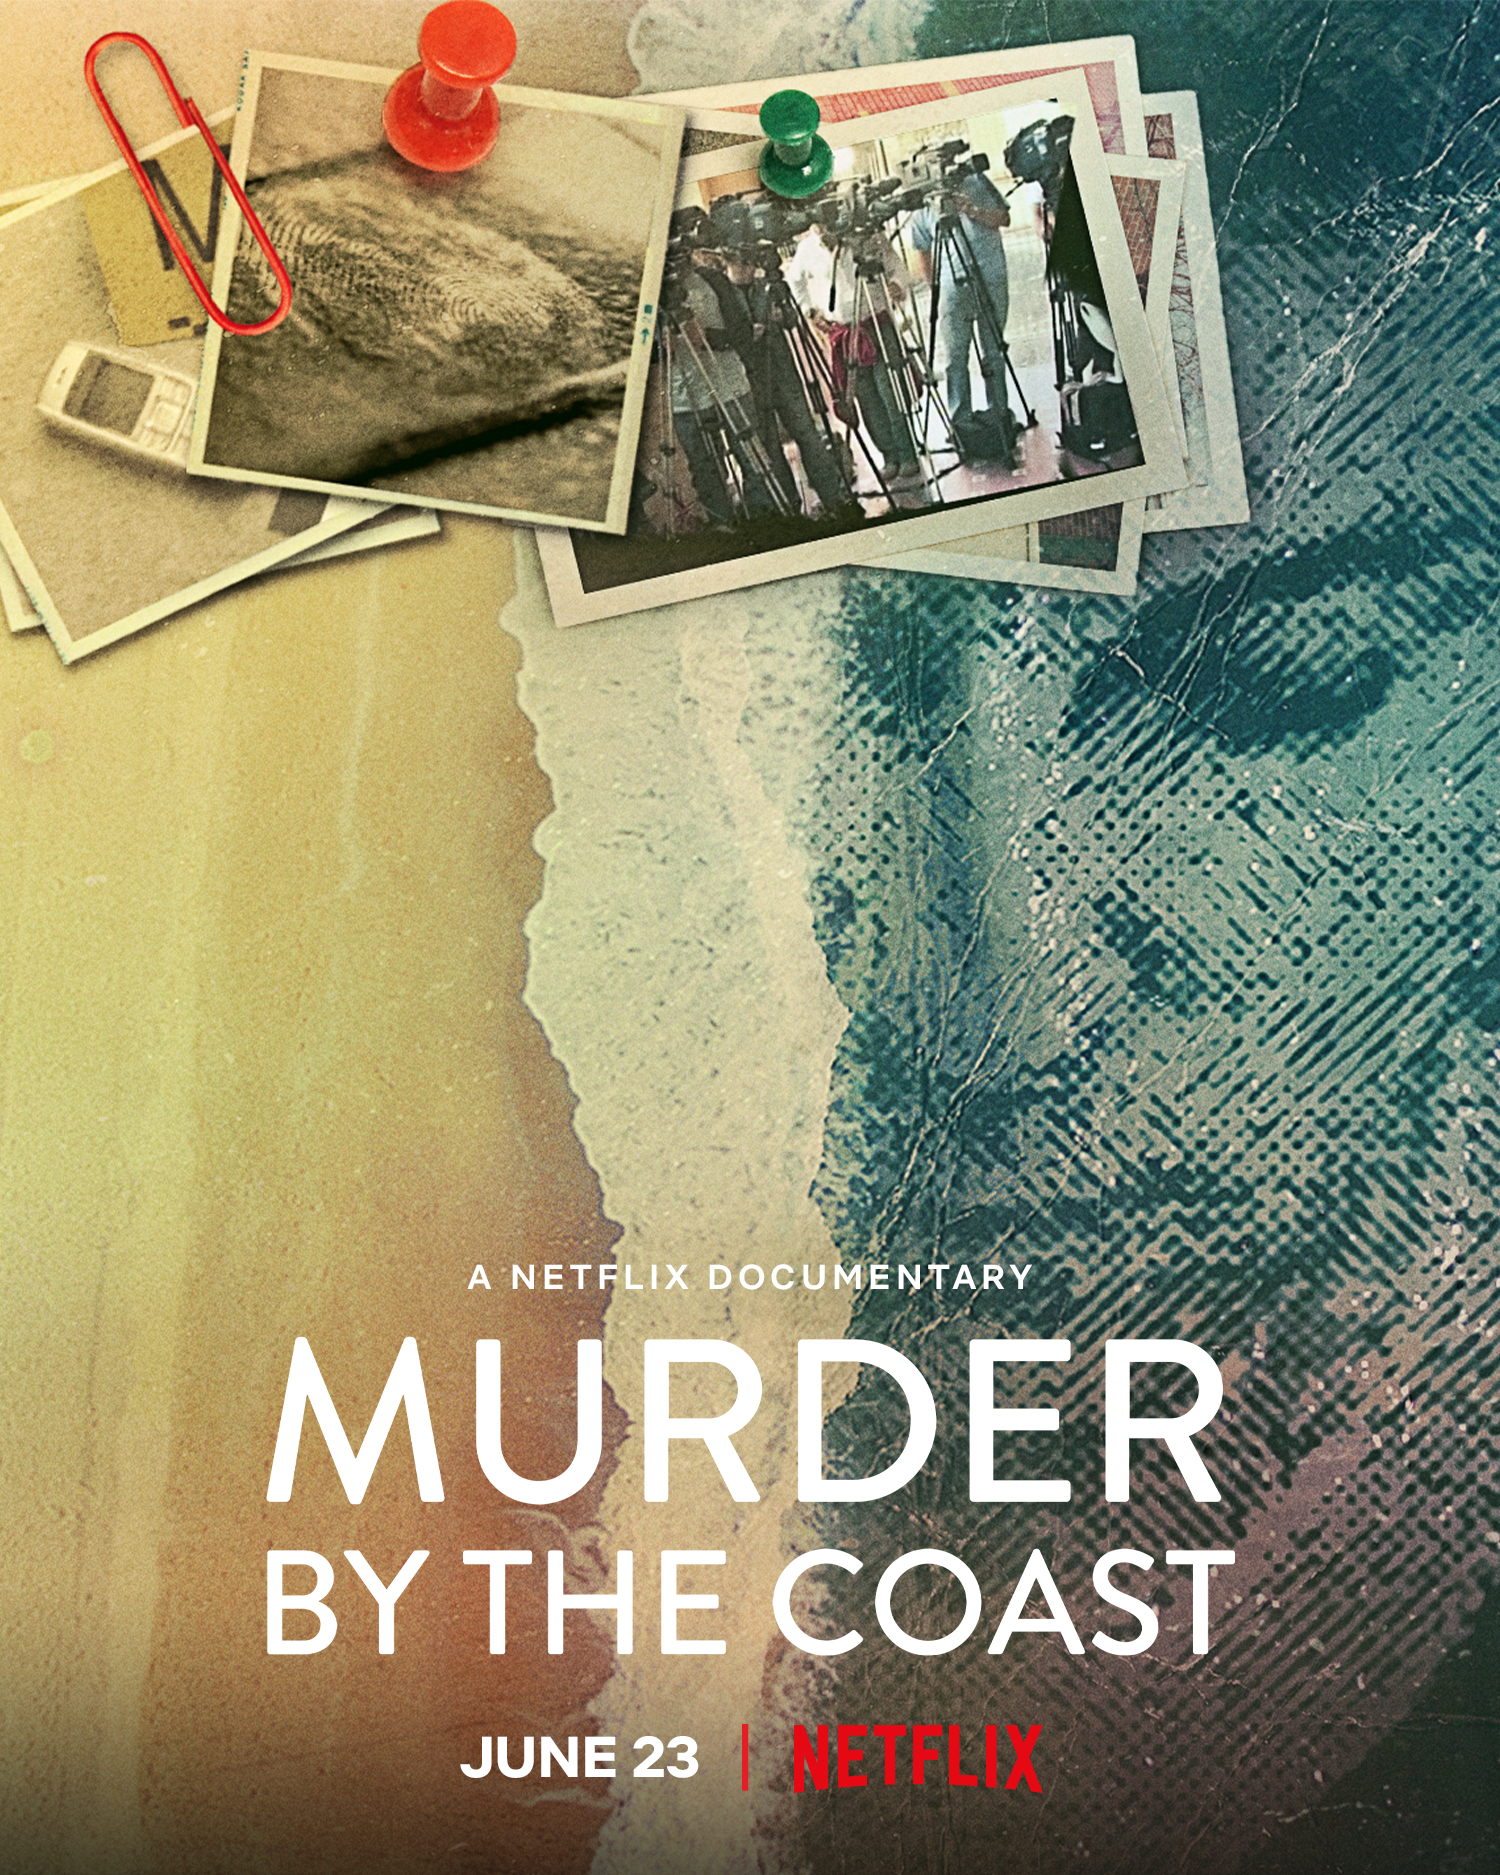 ดูหนังออนไลน์ฟรี Murder by the Coast | Netflix (2021) ฆาตกรรม ณ เมืองชายฝั่ง